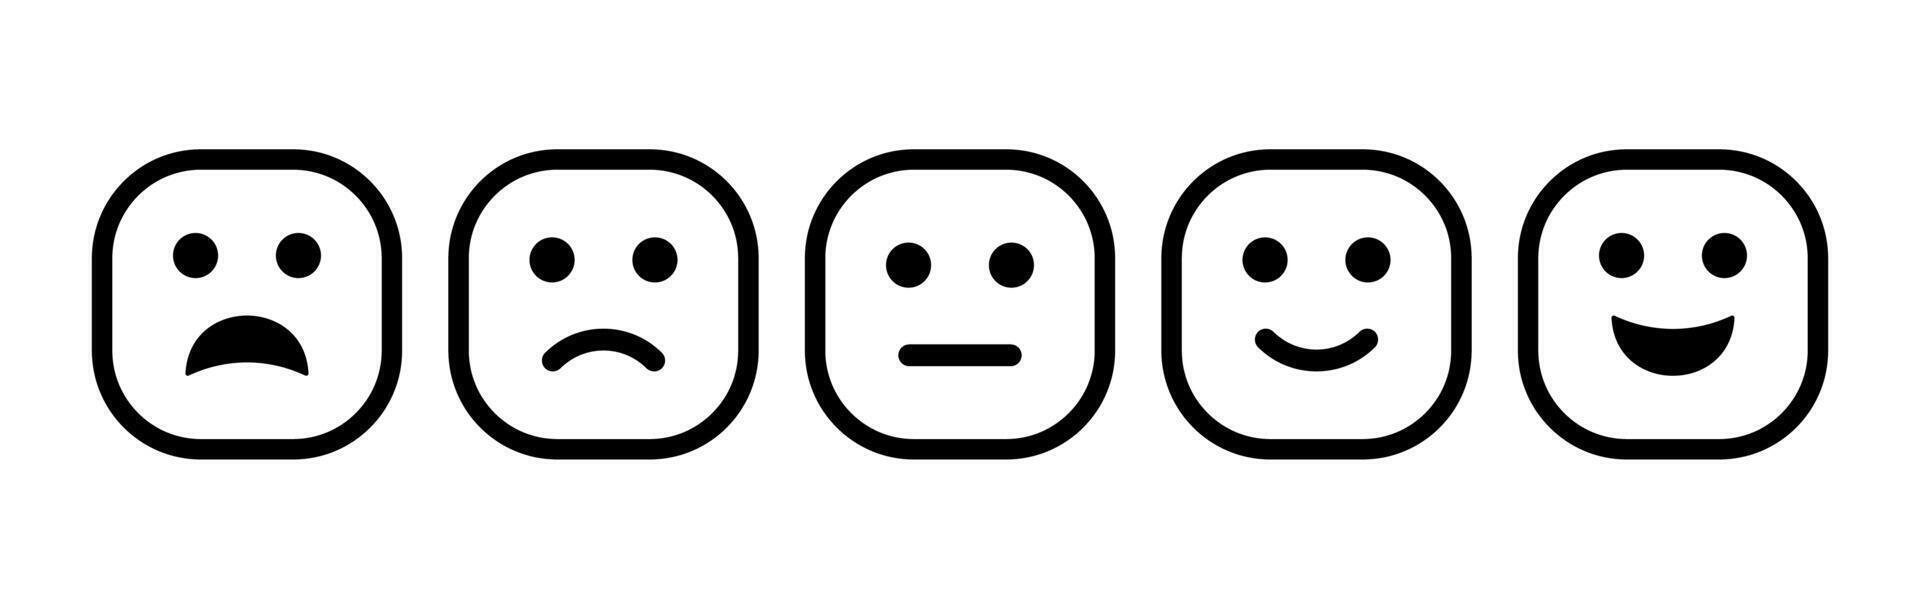 realimentación de satisfacción Velocidad nivel formar con emoticones cuadrado emoticono excelente bueno promedio triste malo. realimentación usuario icono experiencia. vector